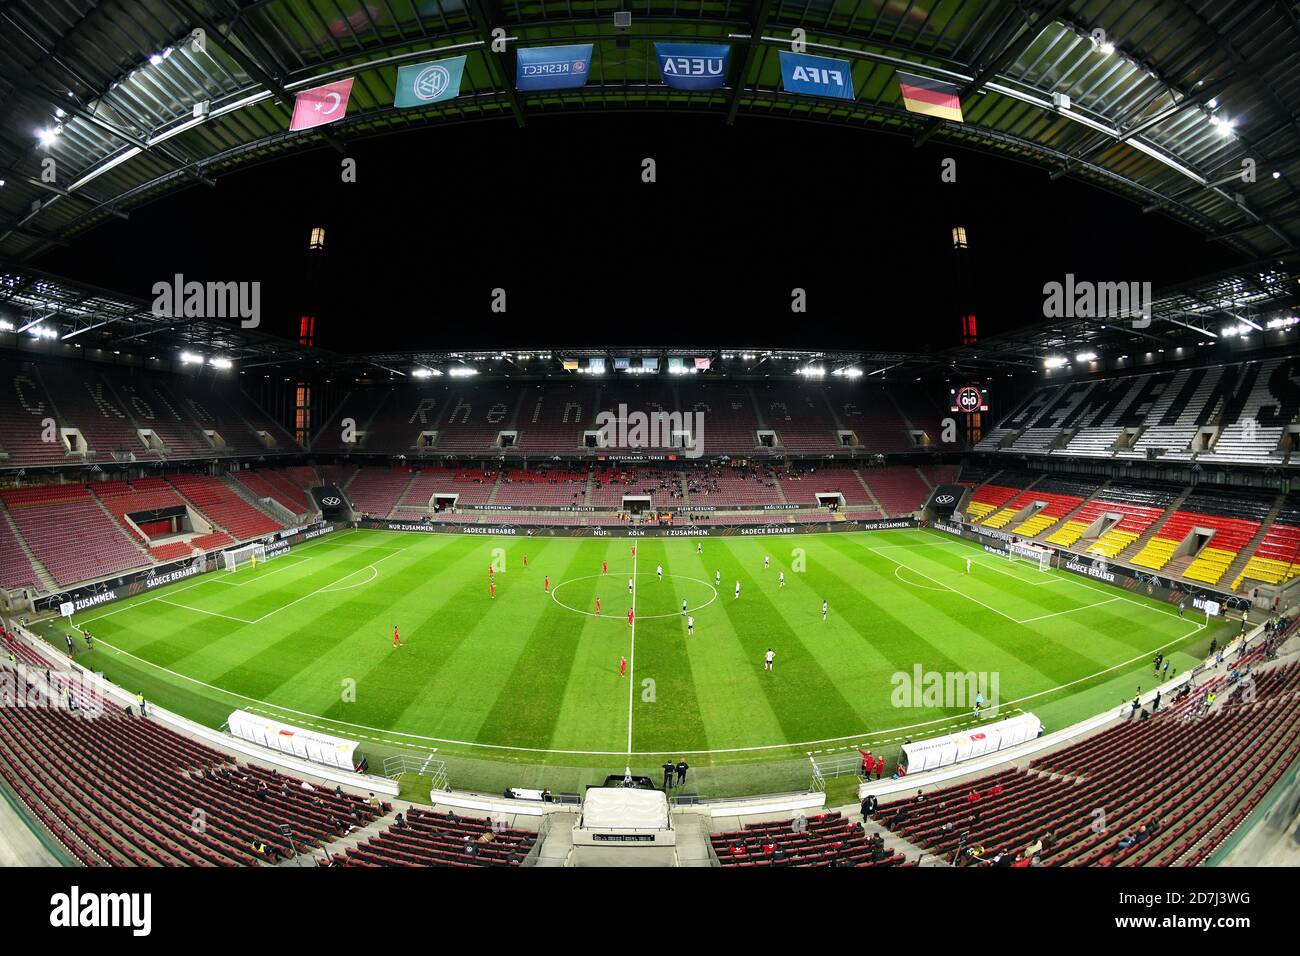 Visión general del casi vacío Rhein Energie Stadium en el partido internacional DFB entre Alemania y Turquía, Colonia, Alemania Foto de stock